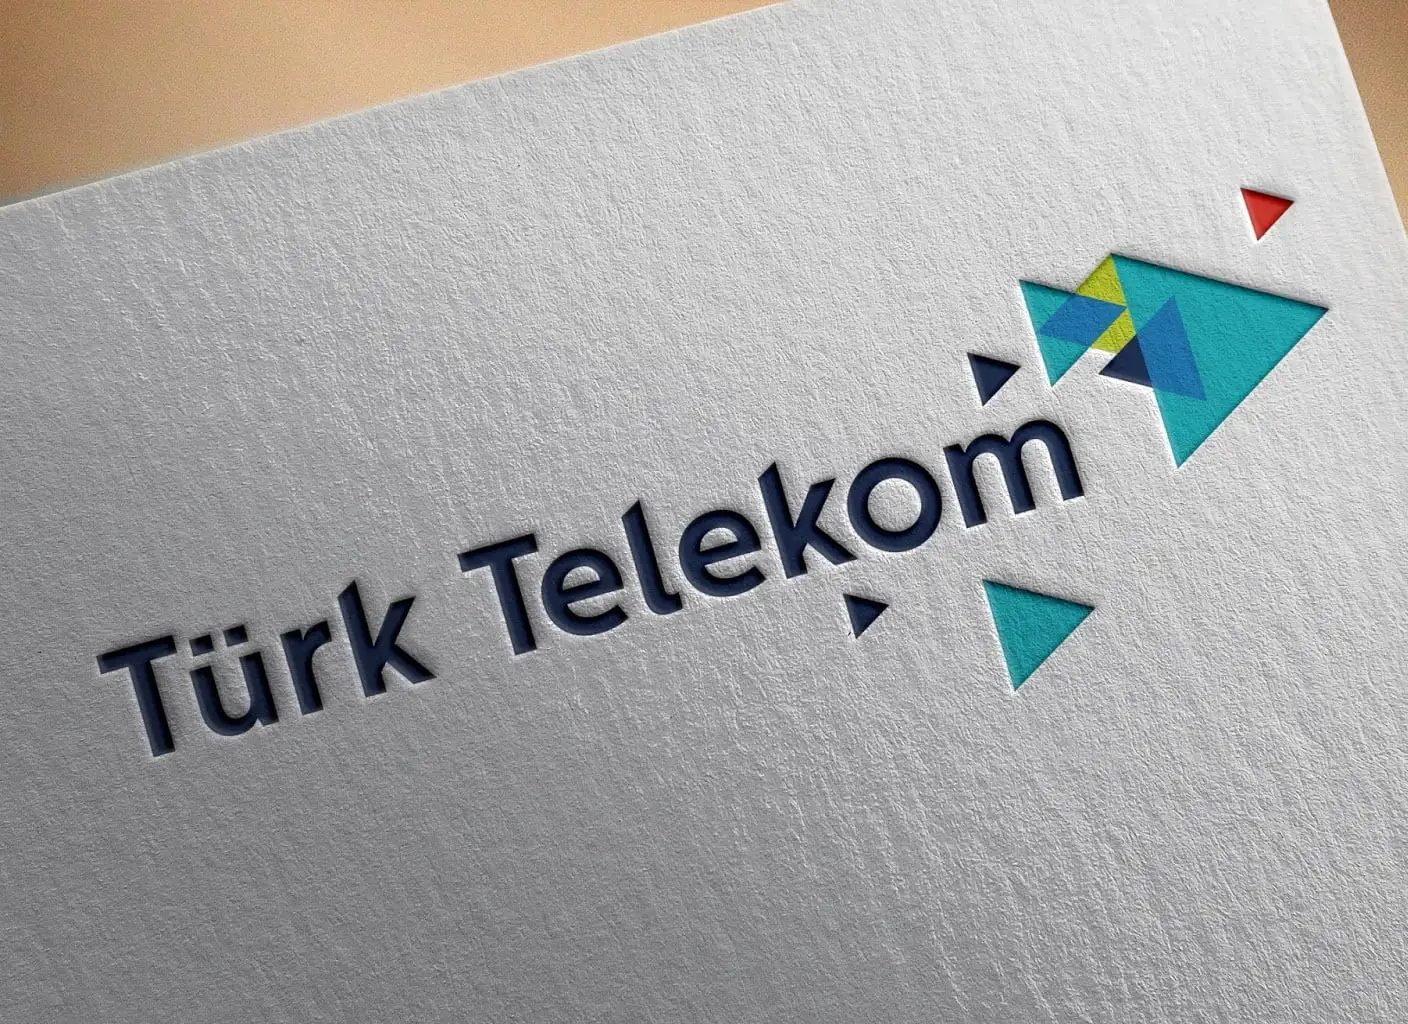 Mobil hattı Türk Telekom olanlara müjde! 1.500 TL para iadesi yapılıyor